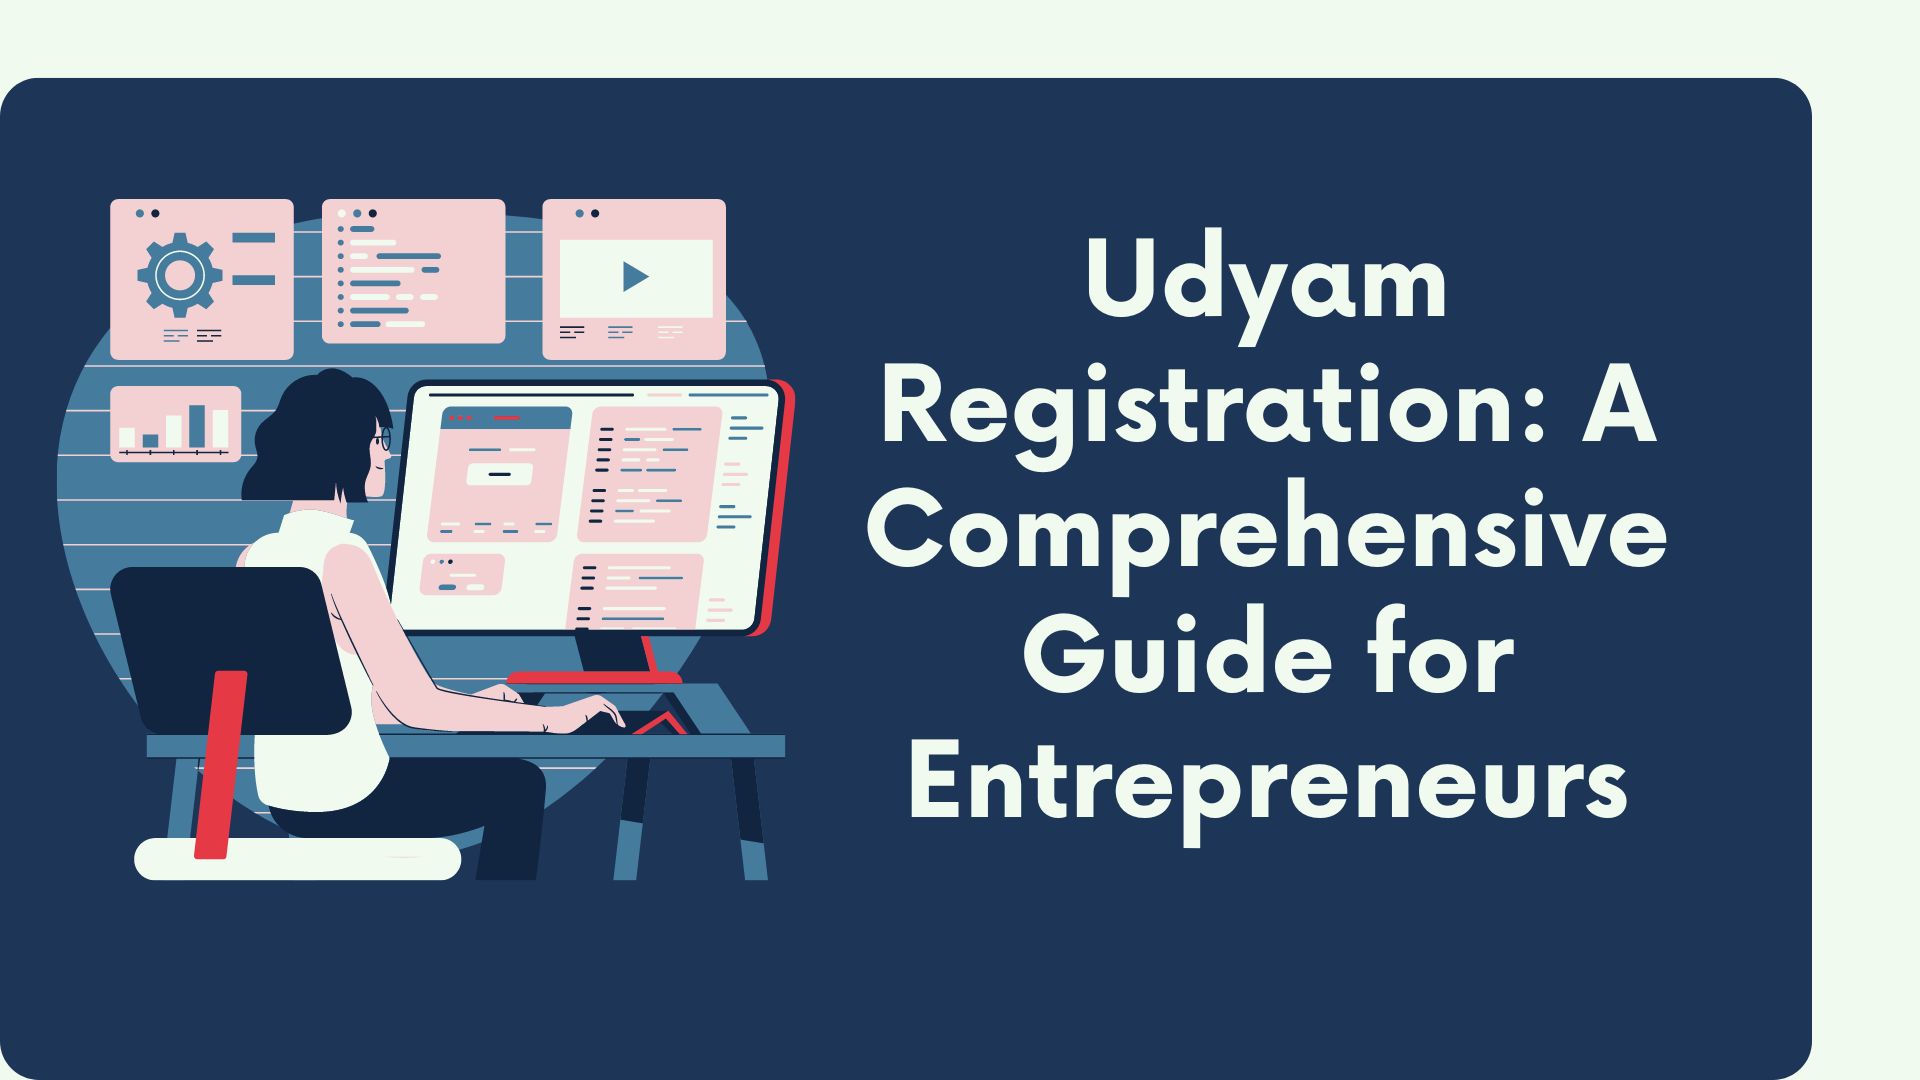 Udyam Registration: A Comprehensive Guide for Entrepreneurs